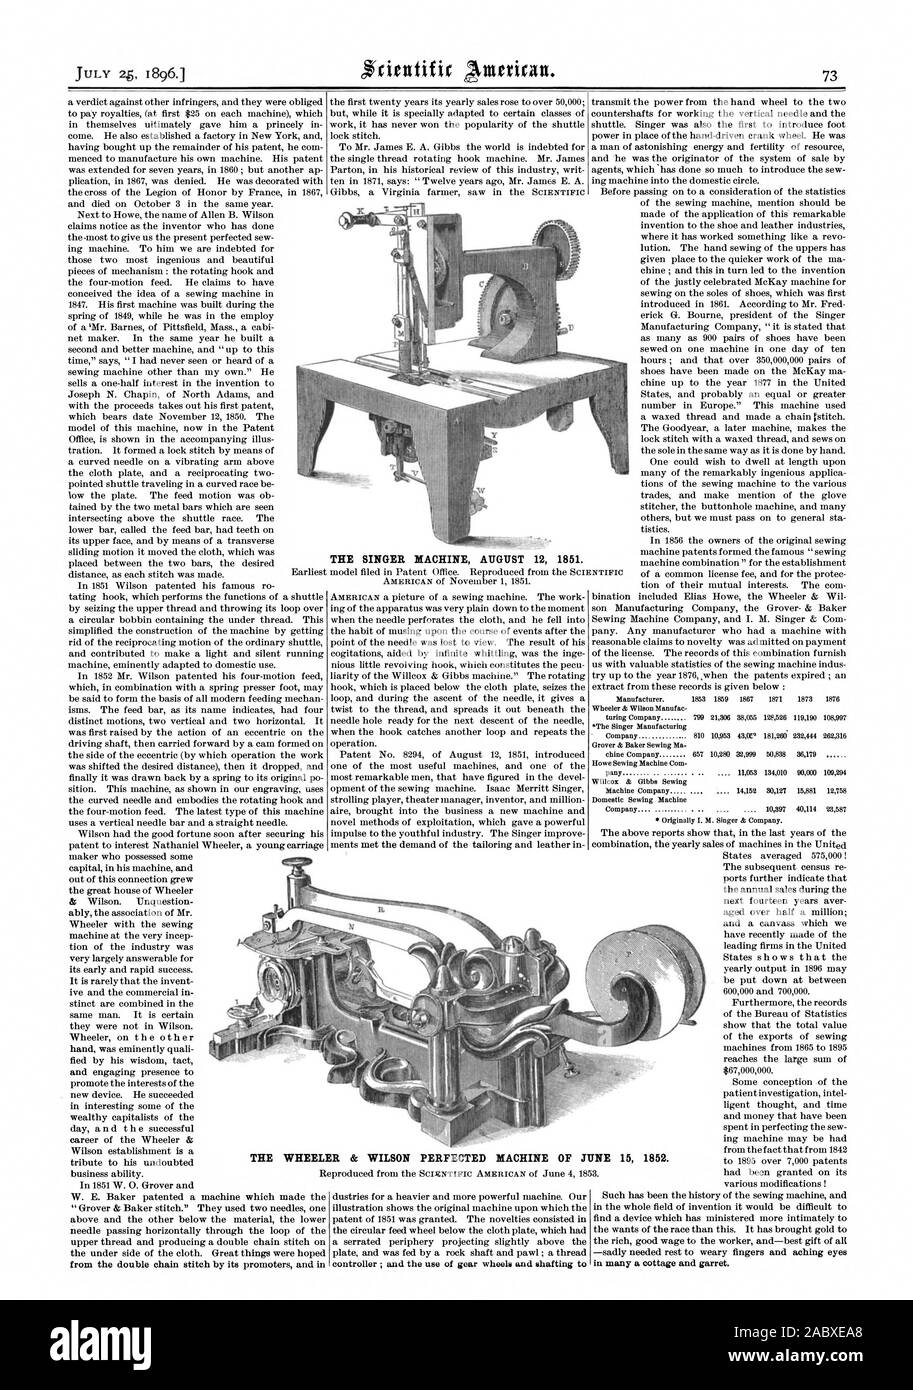 Der Sänger MASCHINE 12. AUGUST 1851. Die Wheeler & Wilson ausgereifte Maschine VOM 15. JUNI 1852., Scientific American, 1896-07-25 Stockfoto